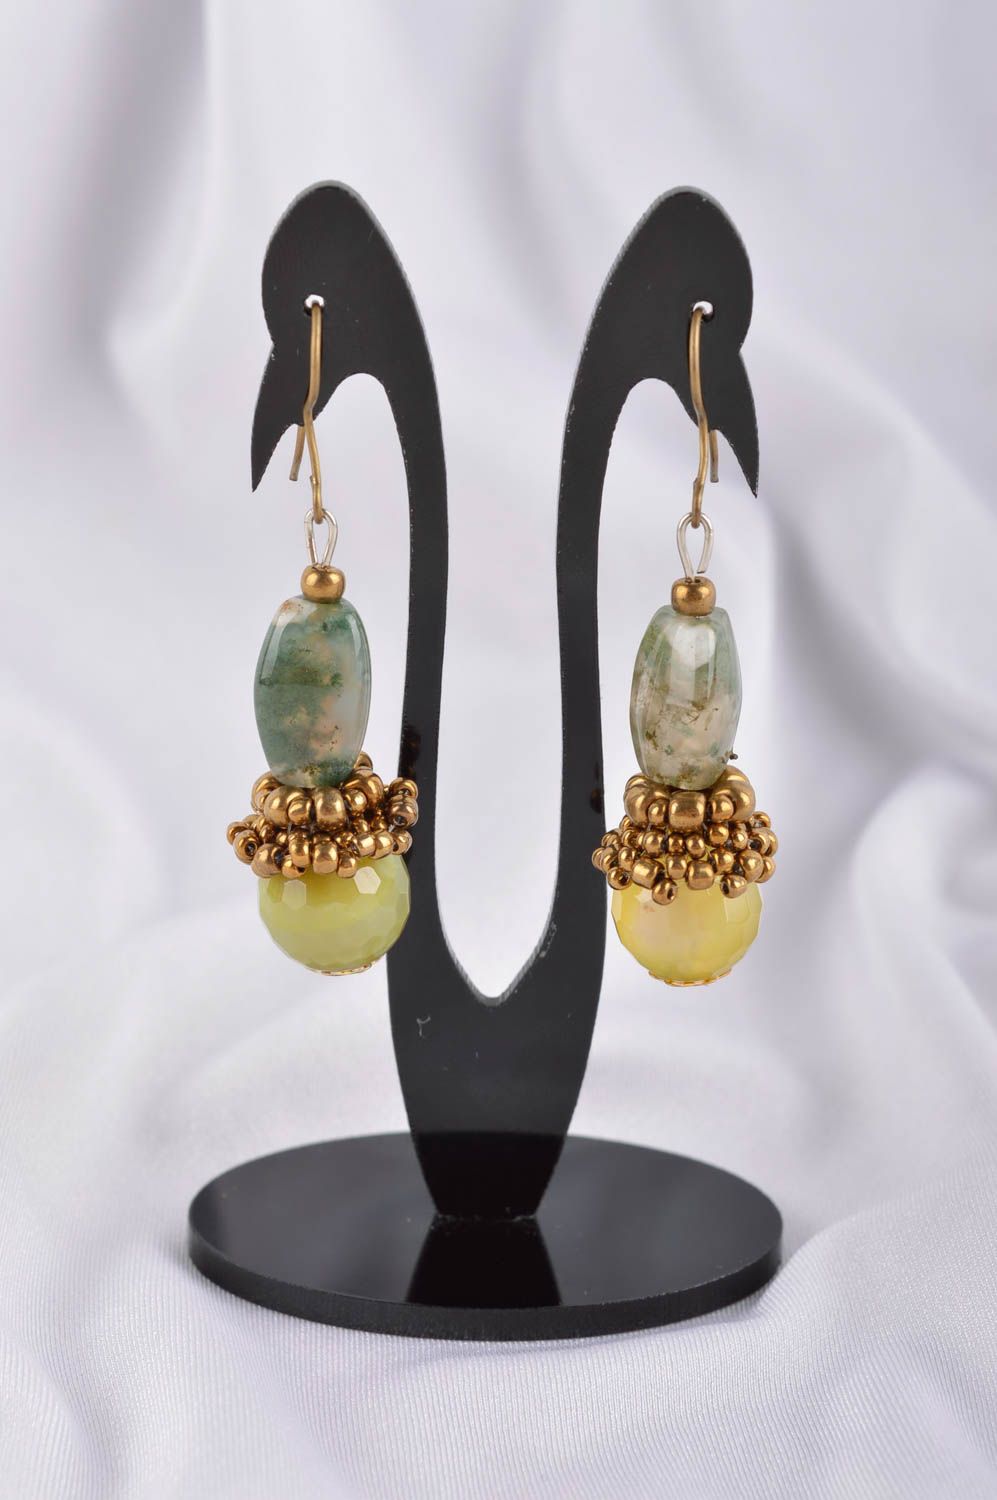 Handmade earrings stylish earrings designer jewelry women accessories gift ideas photo 1